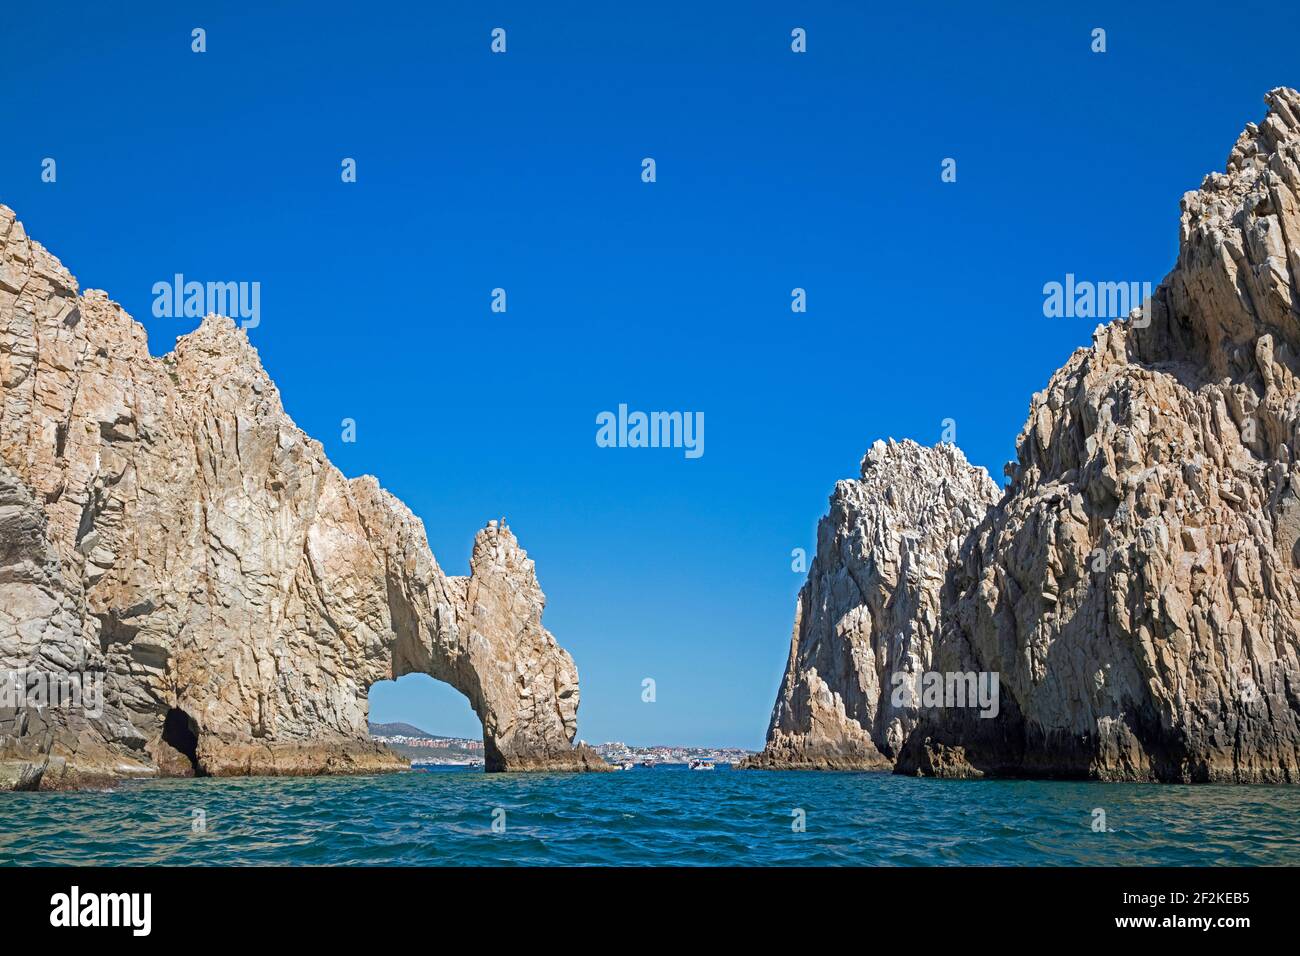 Naturbogen von Cabo San Lucas / El Arco, wo der Golf von Kalifornien auf der Halbinsel Baja California Sur, Mexiko, den Pazifik trifft Stockfoto